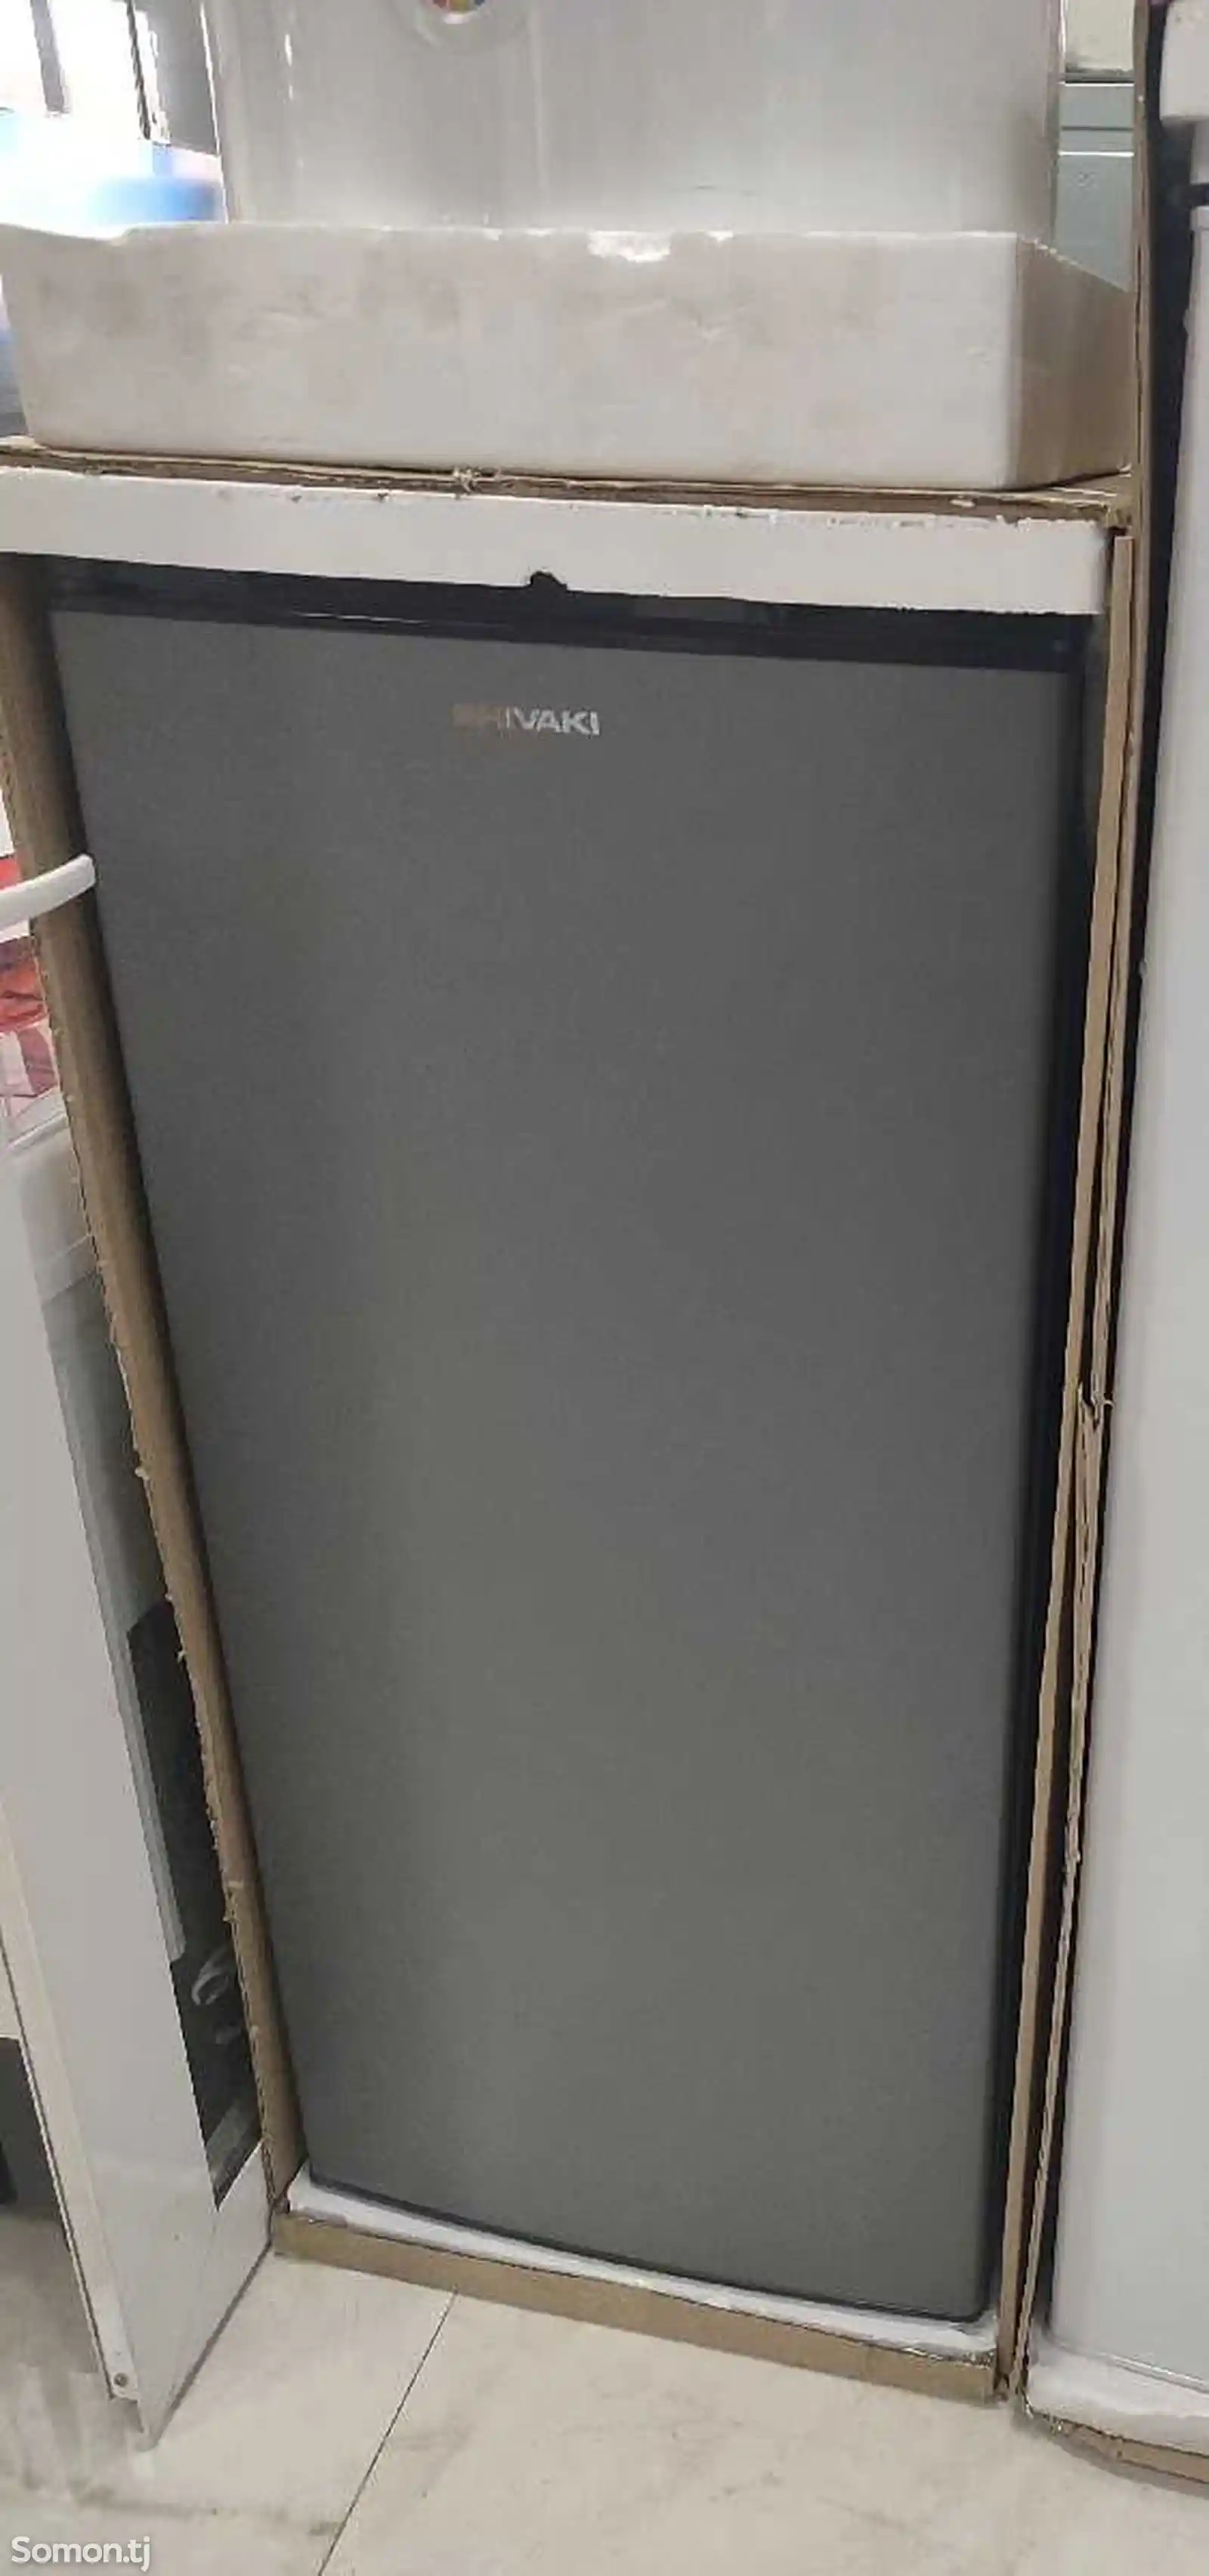 Холодильник Shivaki 228